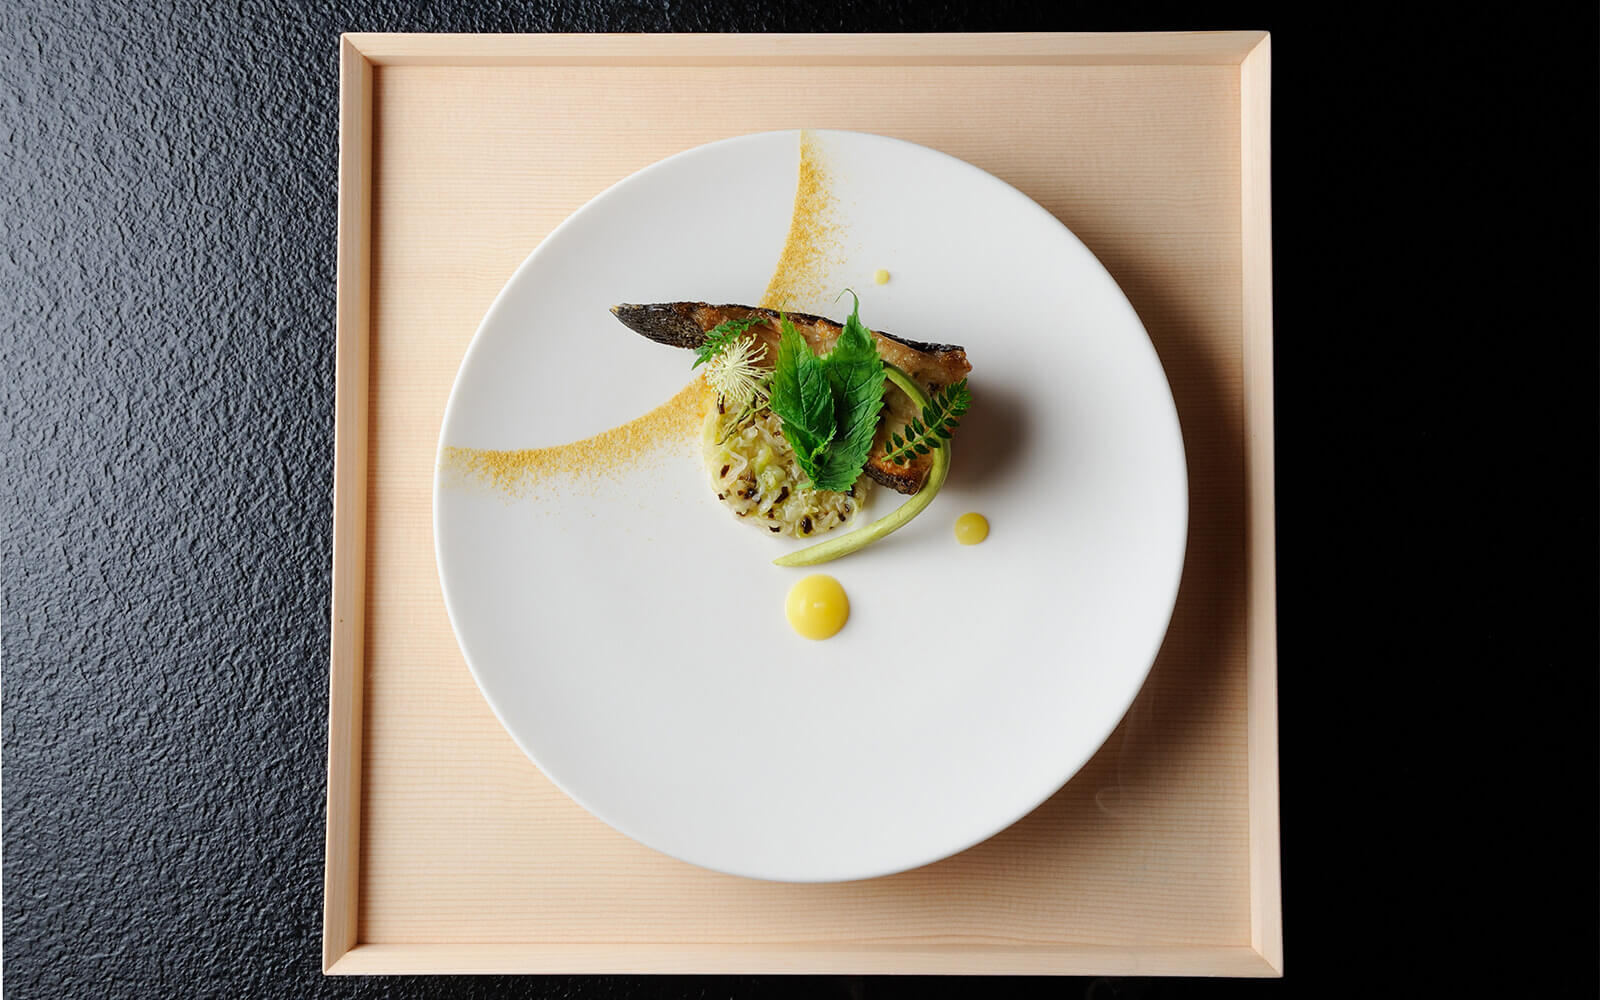 Award-Winning French Cuisine Chef, Noriyuki Hamada|HOSHINOYA Tokyo 